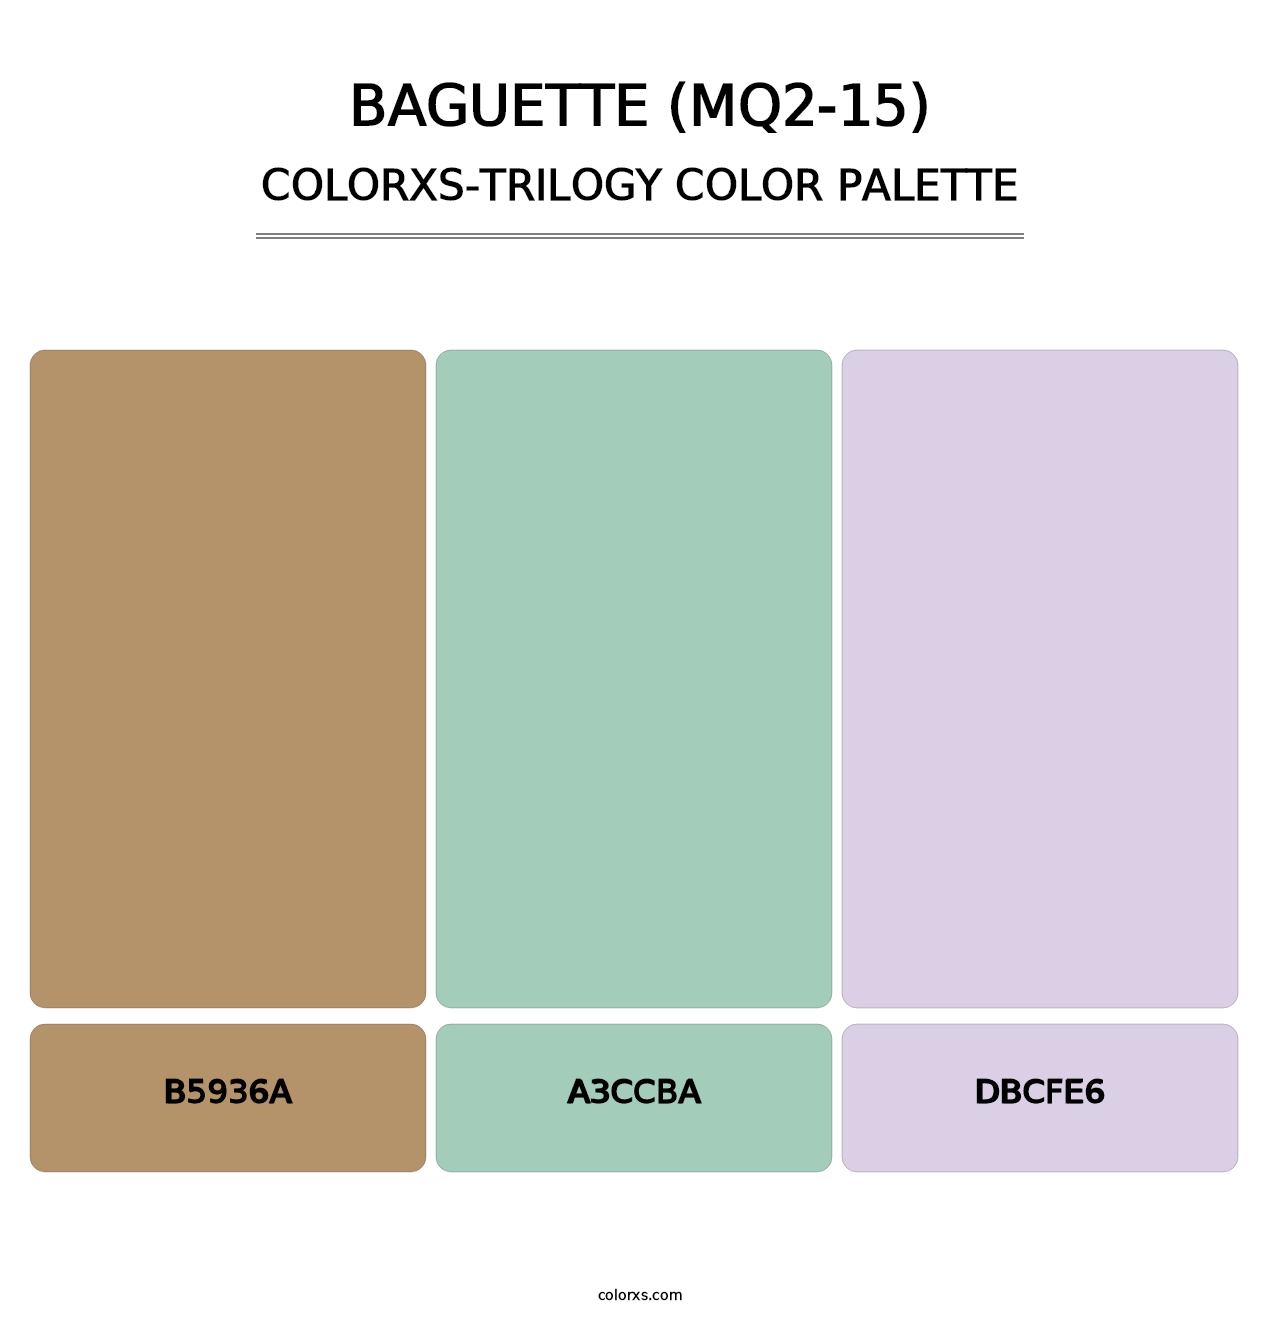 Baguette (MQ2-15) - Colorxs Trilogy Palette